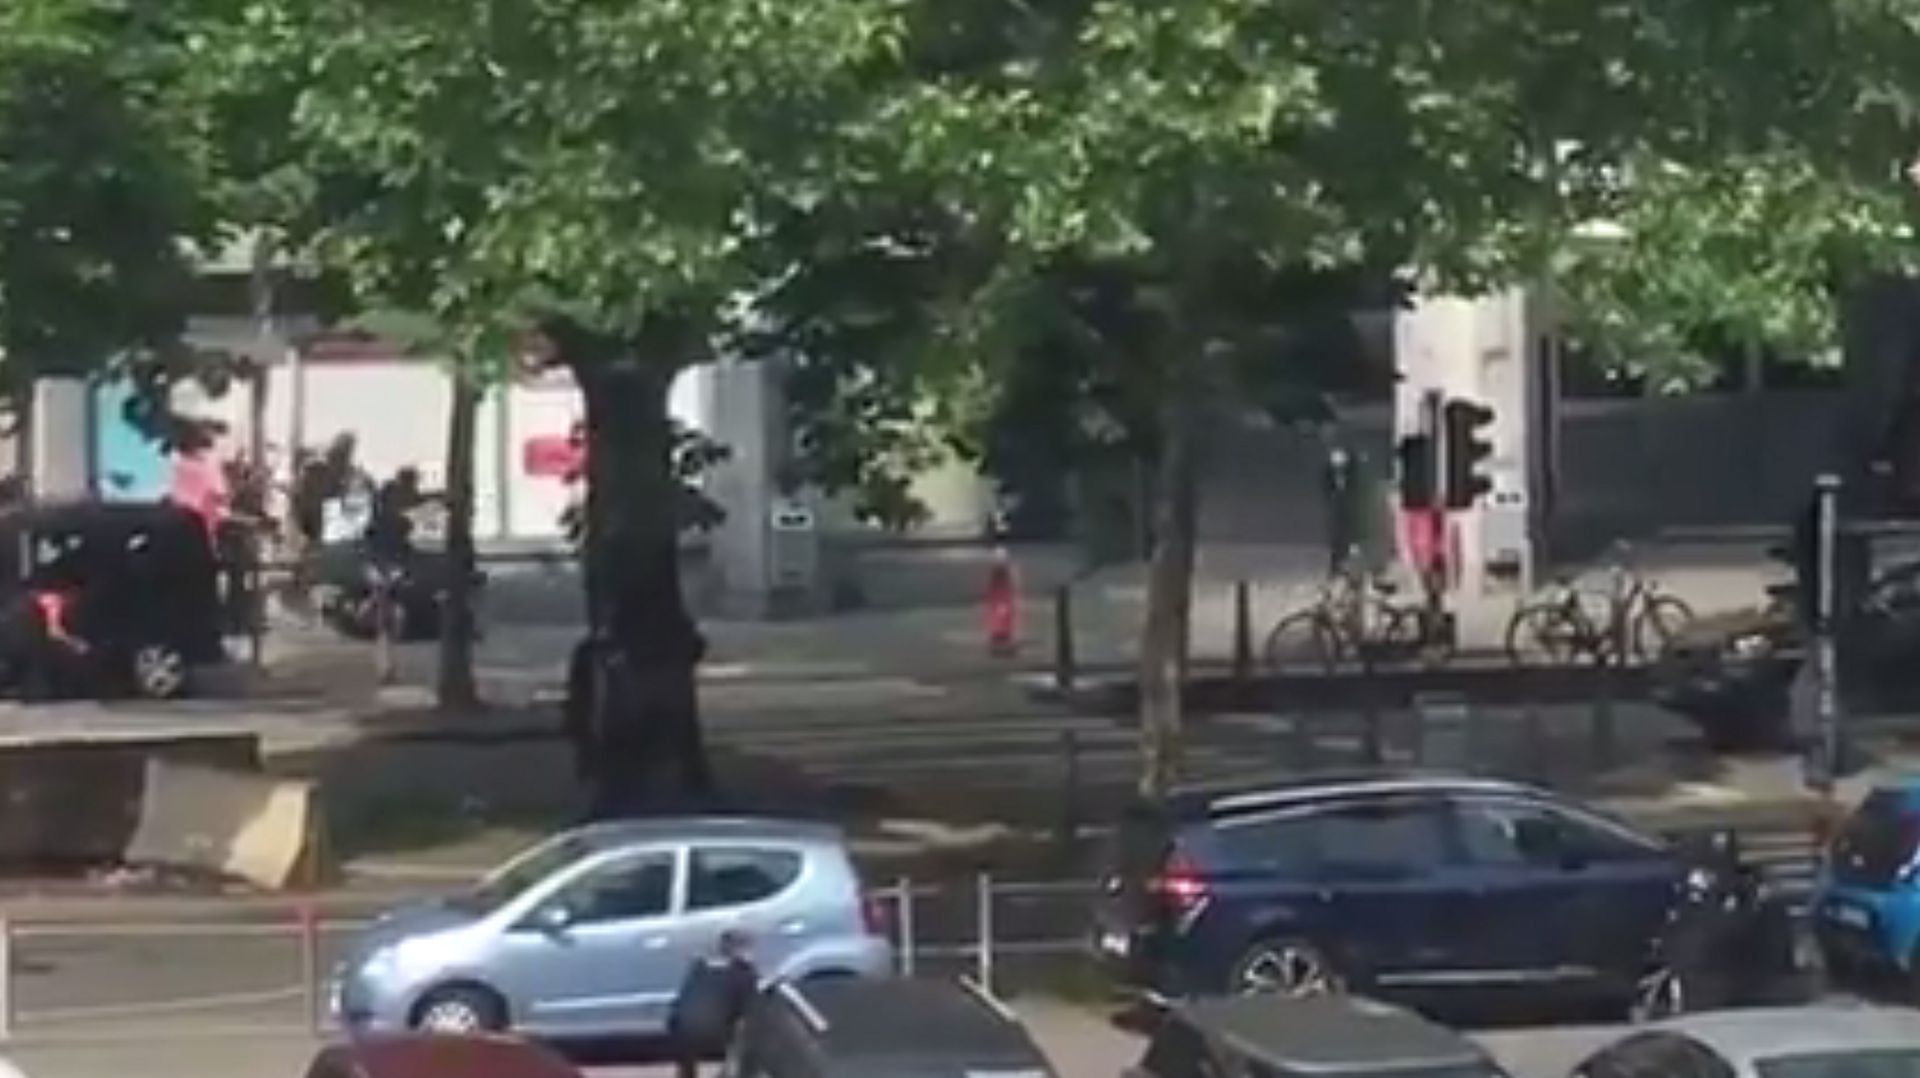 Fusillade à Liège: la vidéo de l'intervention policière pour neutraliser l'assaillant